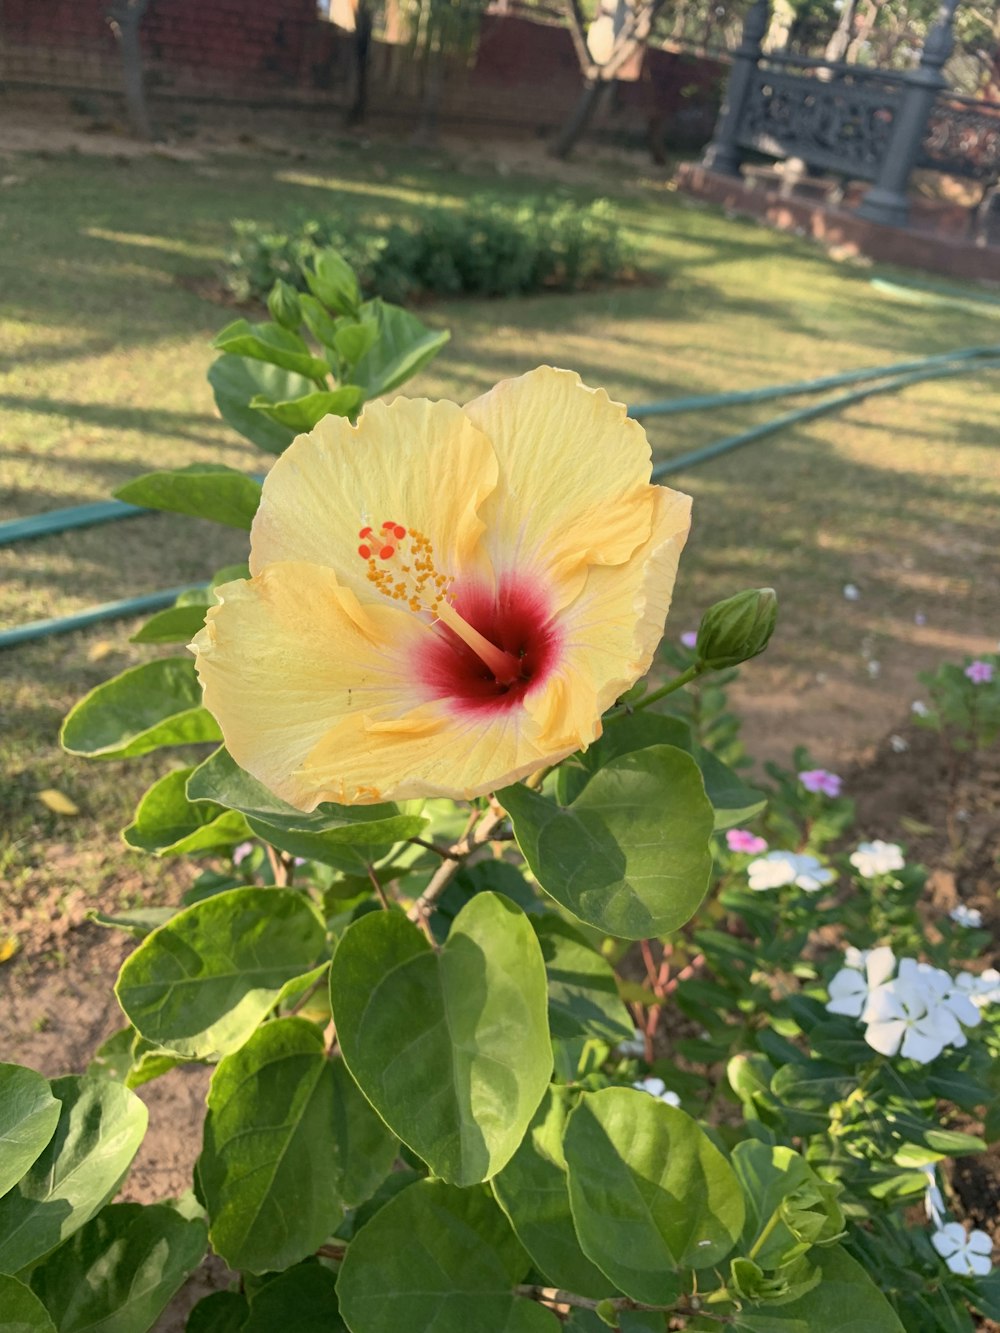 a yellow flower in a garden